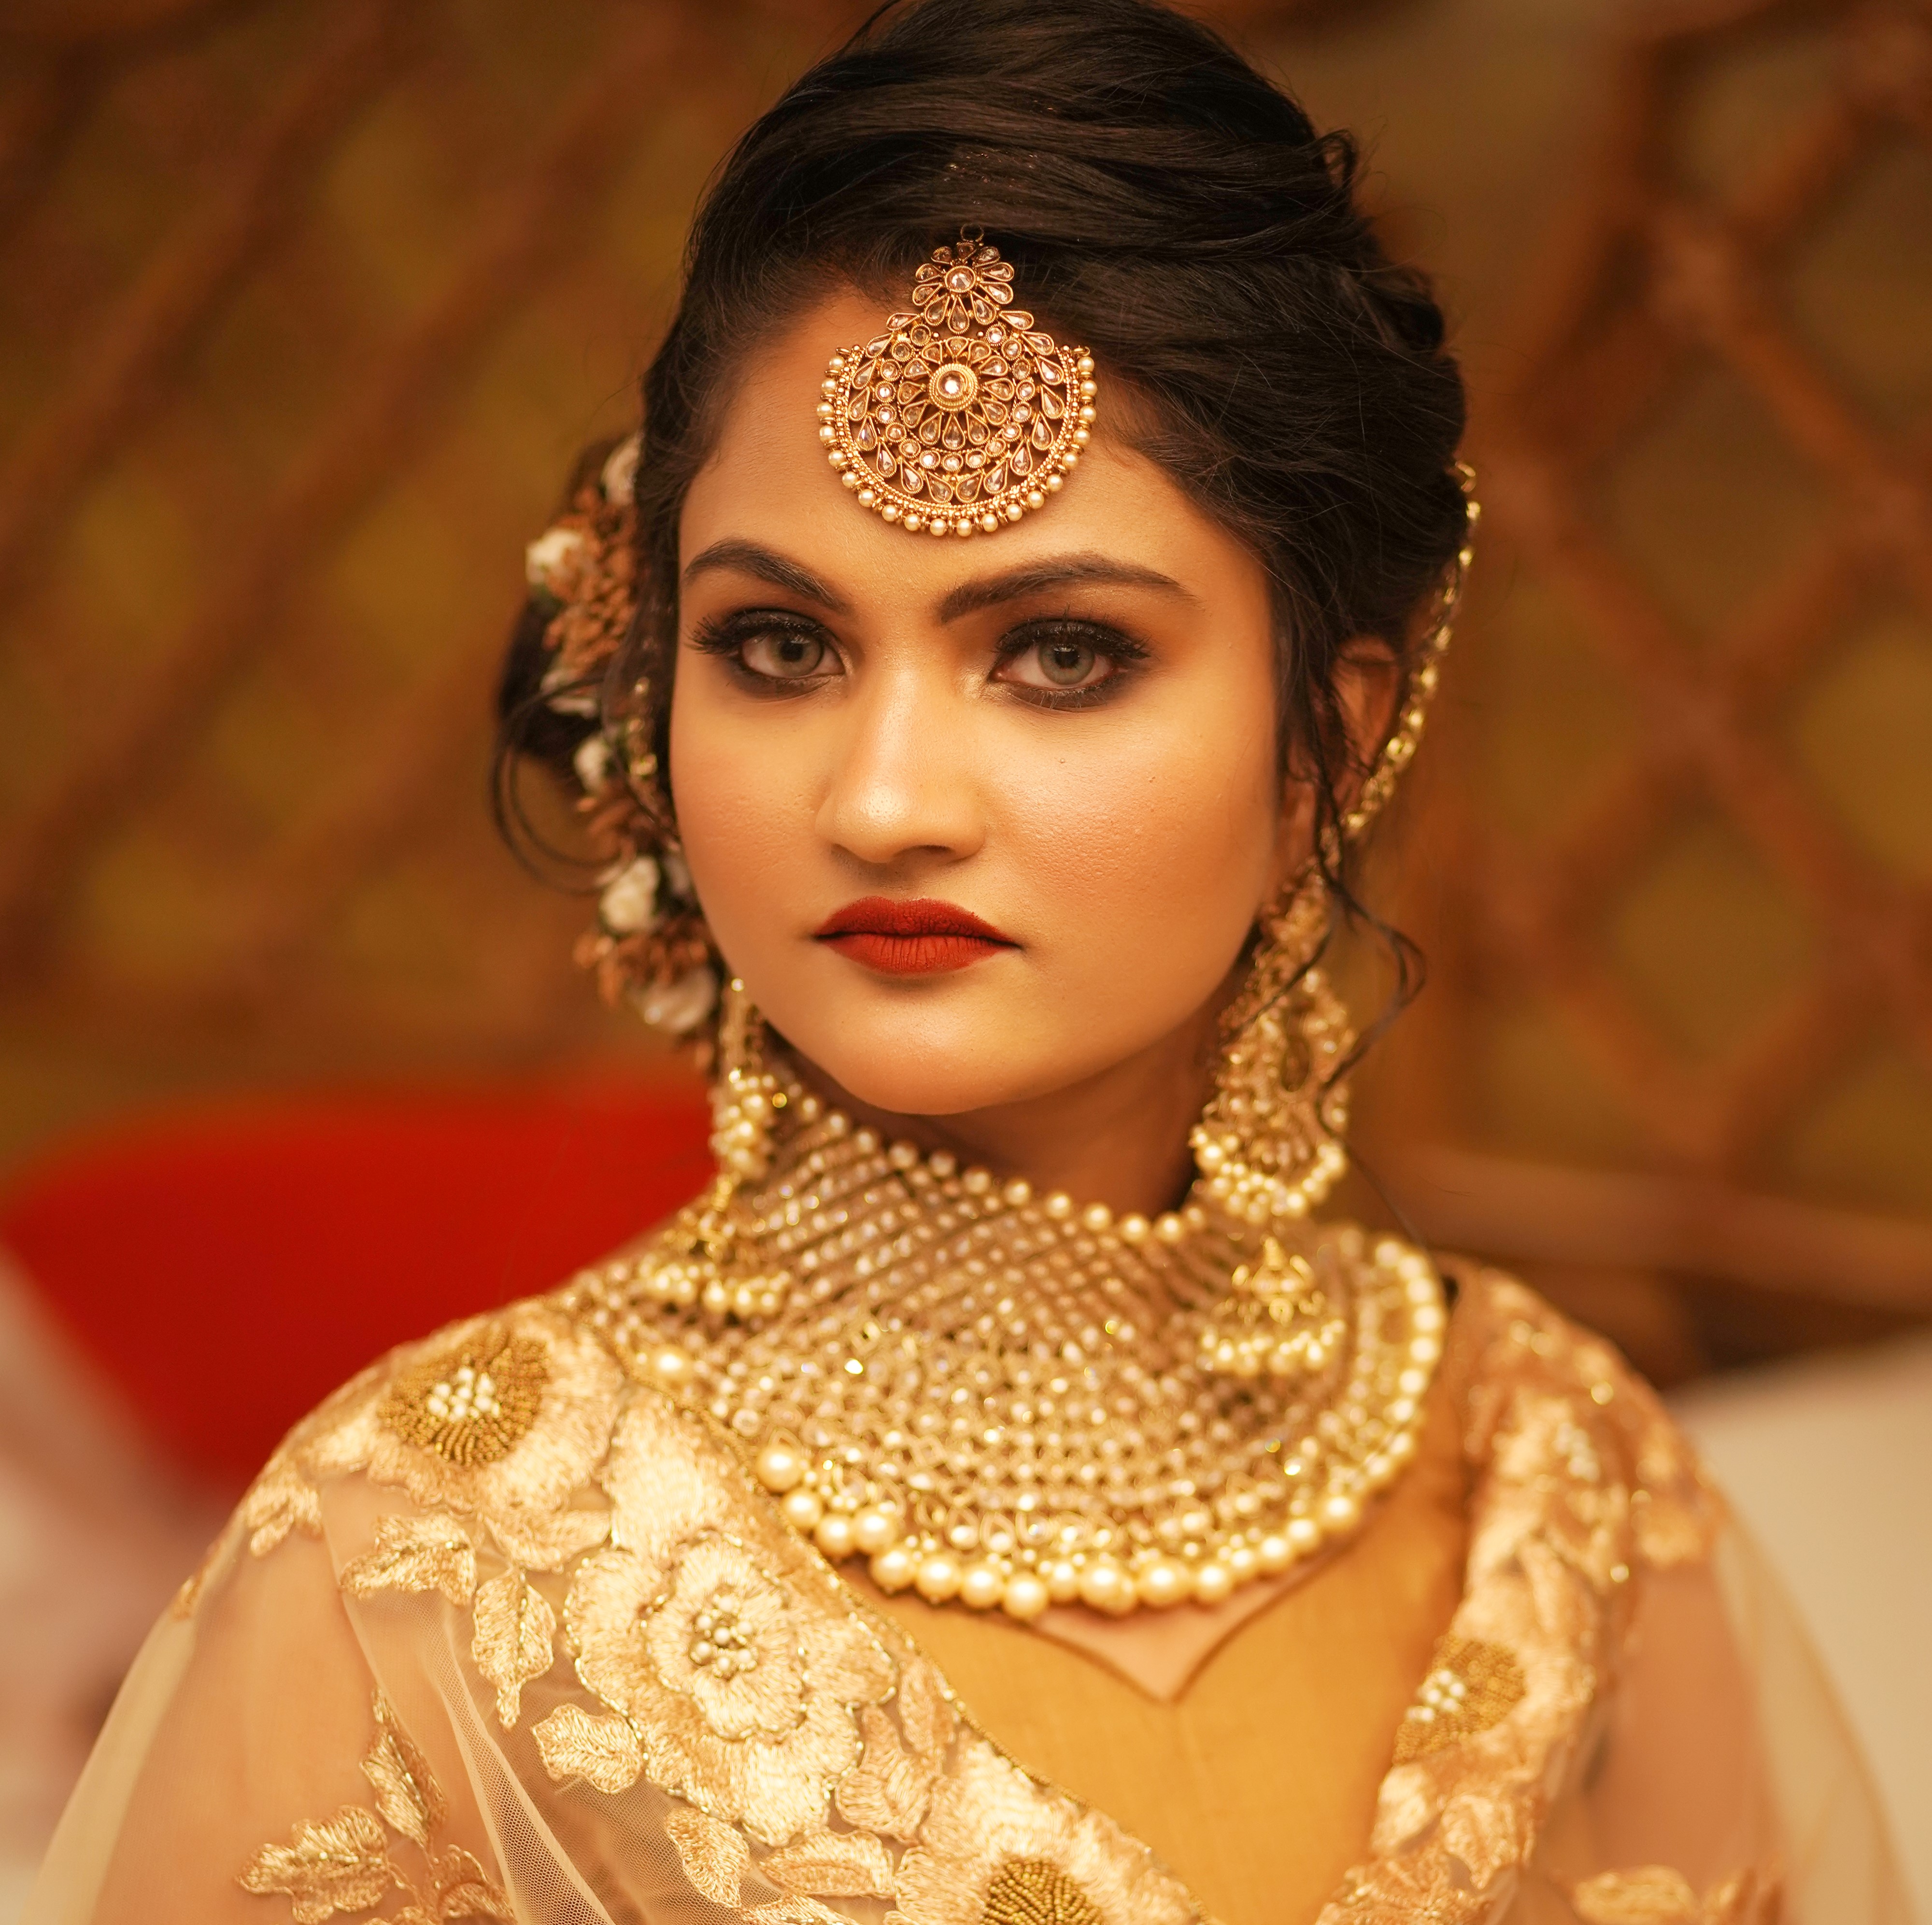 makeup by bindu saini gautam nagar delhi